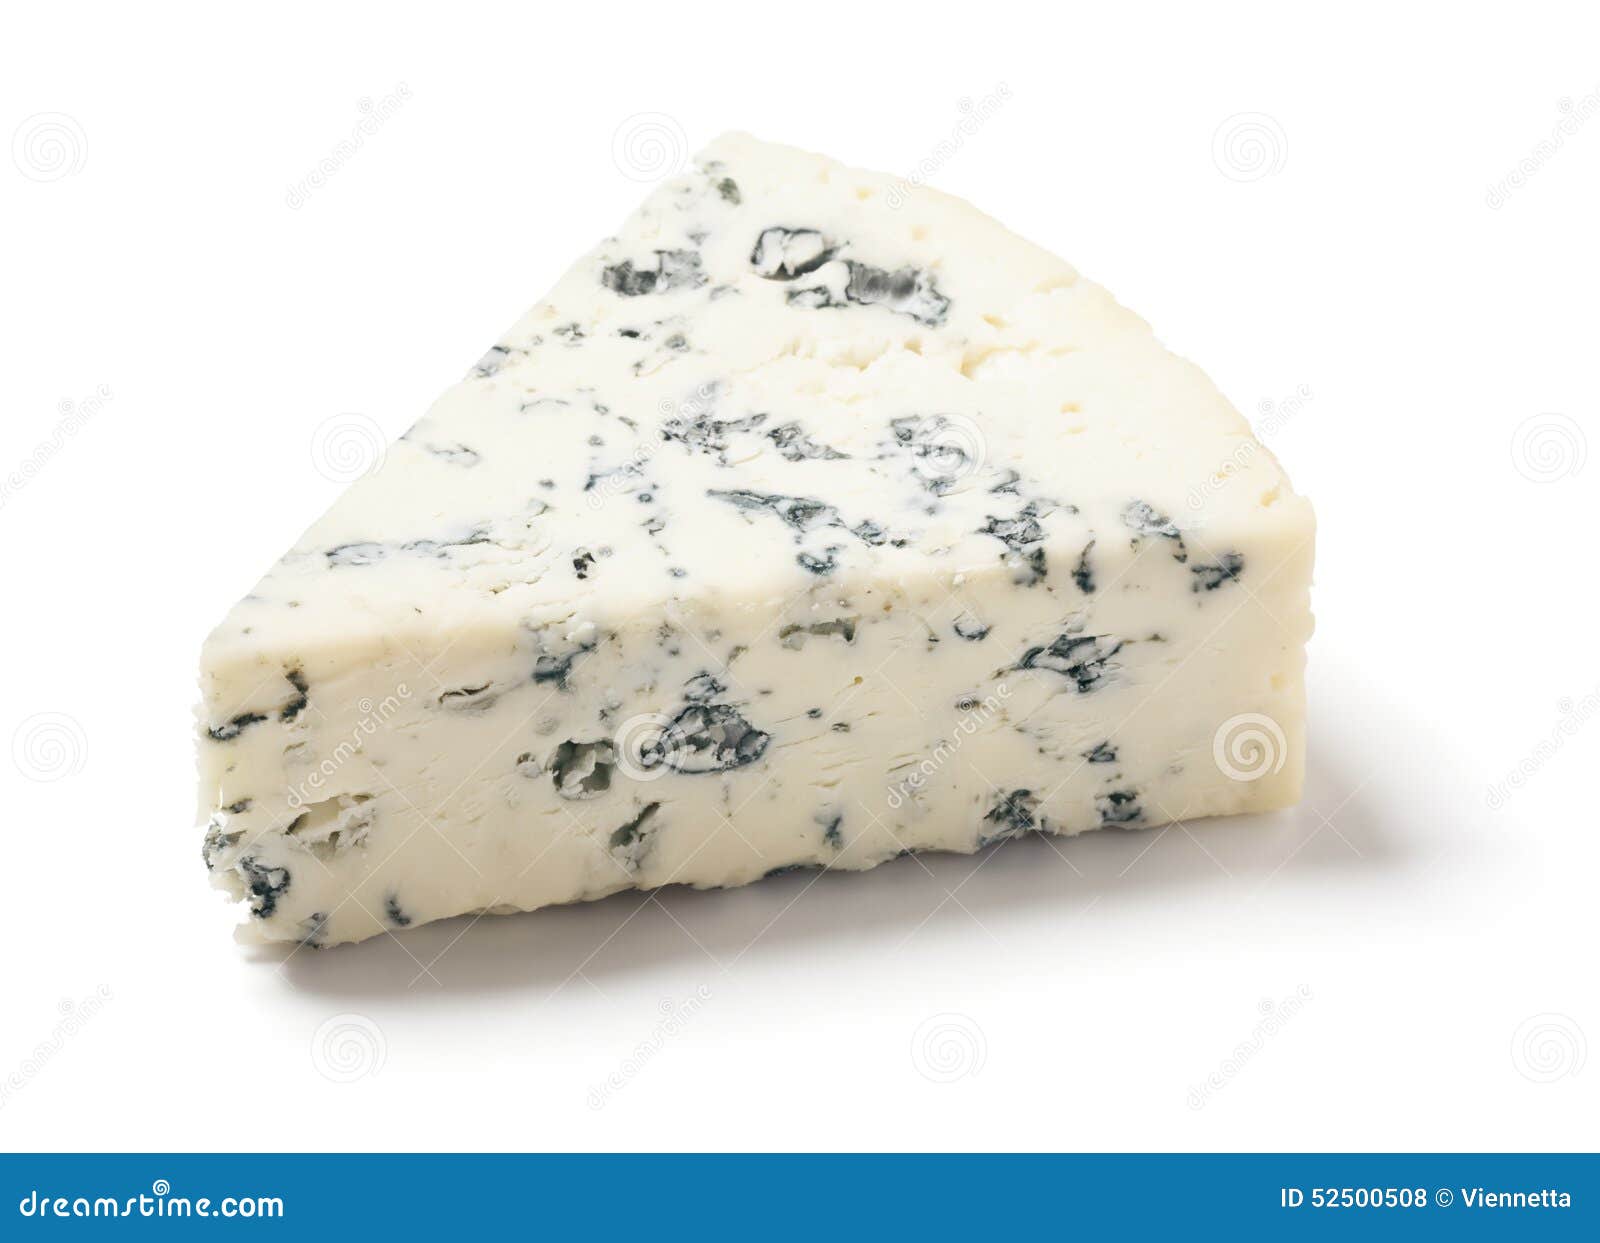 gorgonzola or bleu cheese on white background